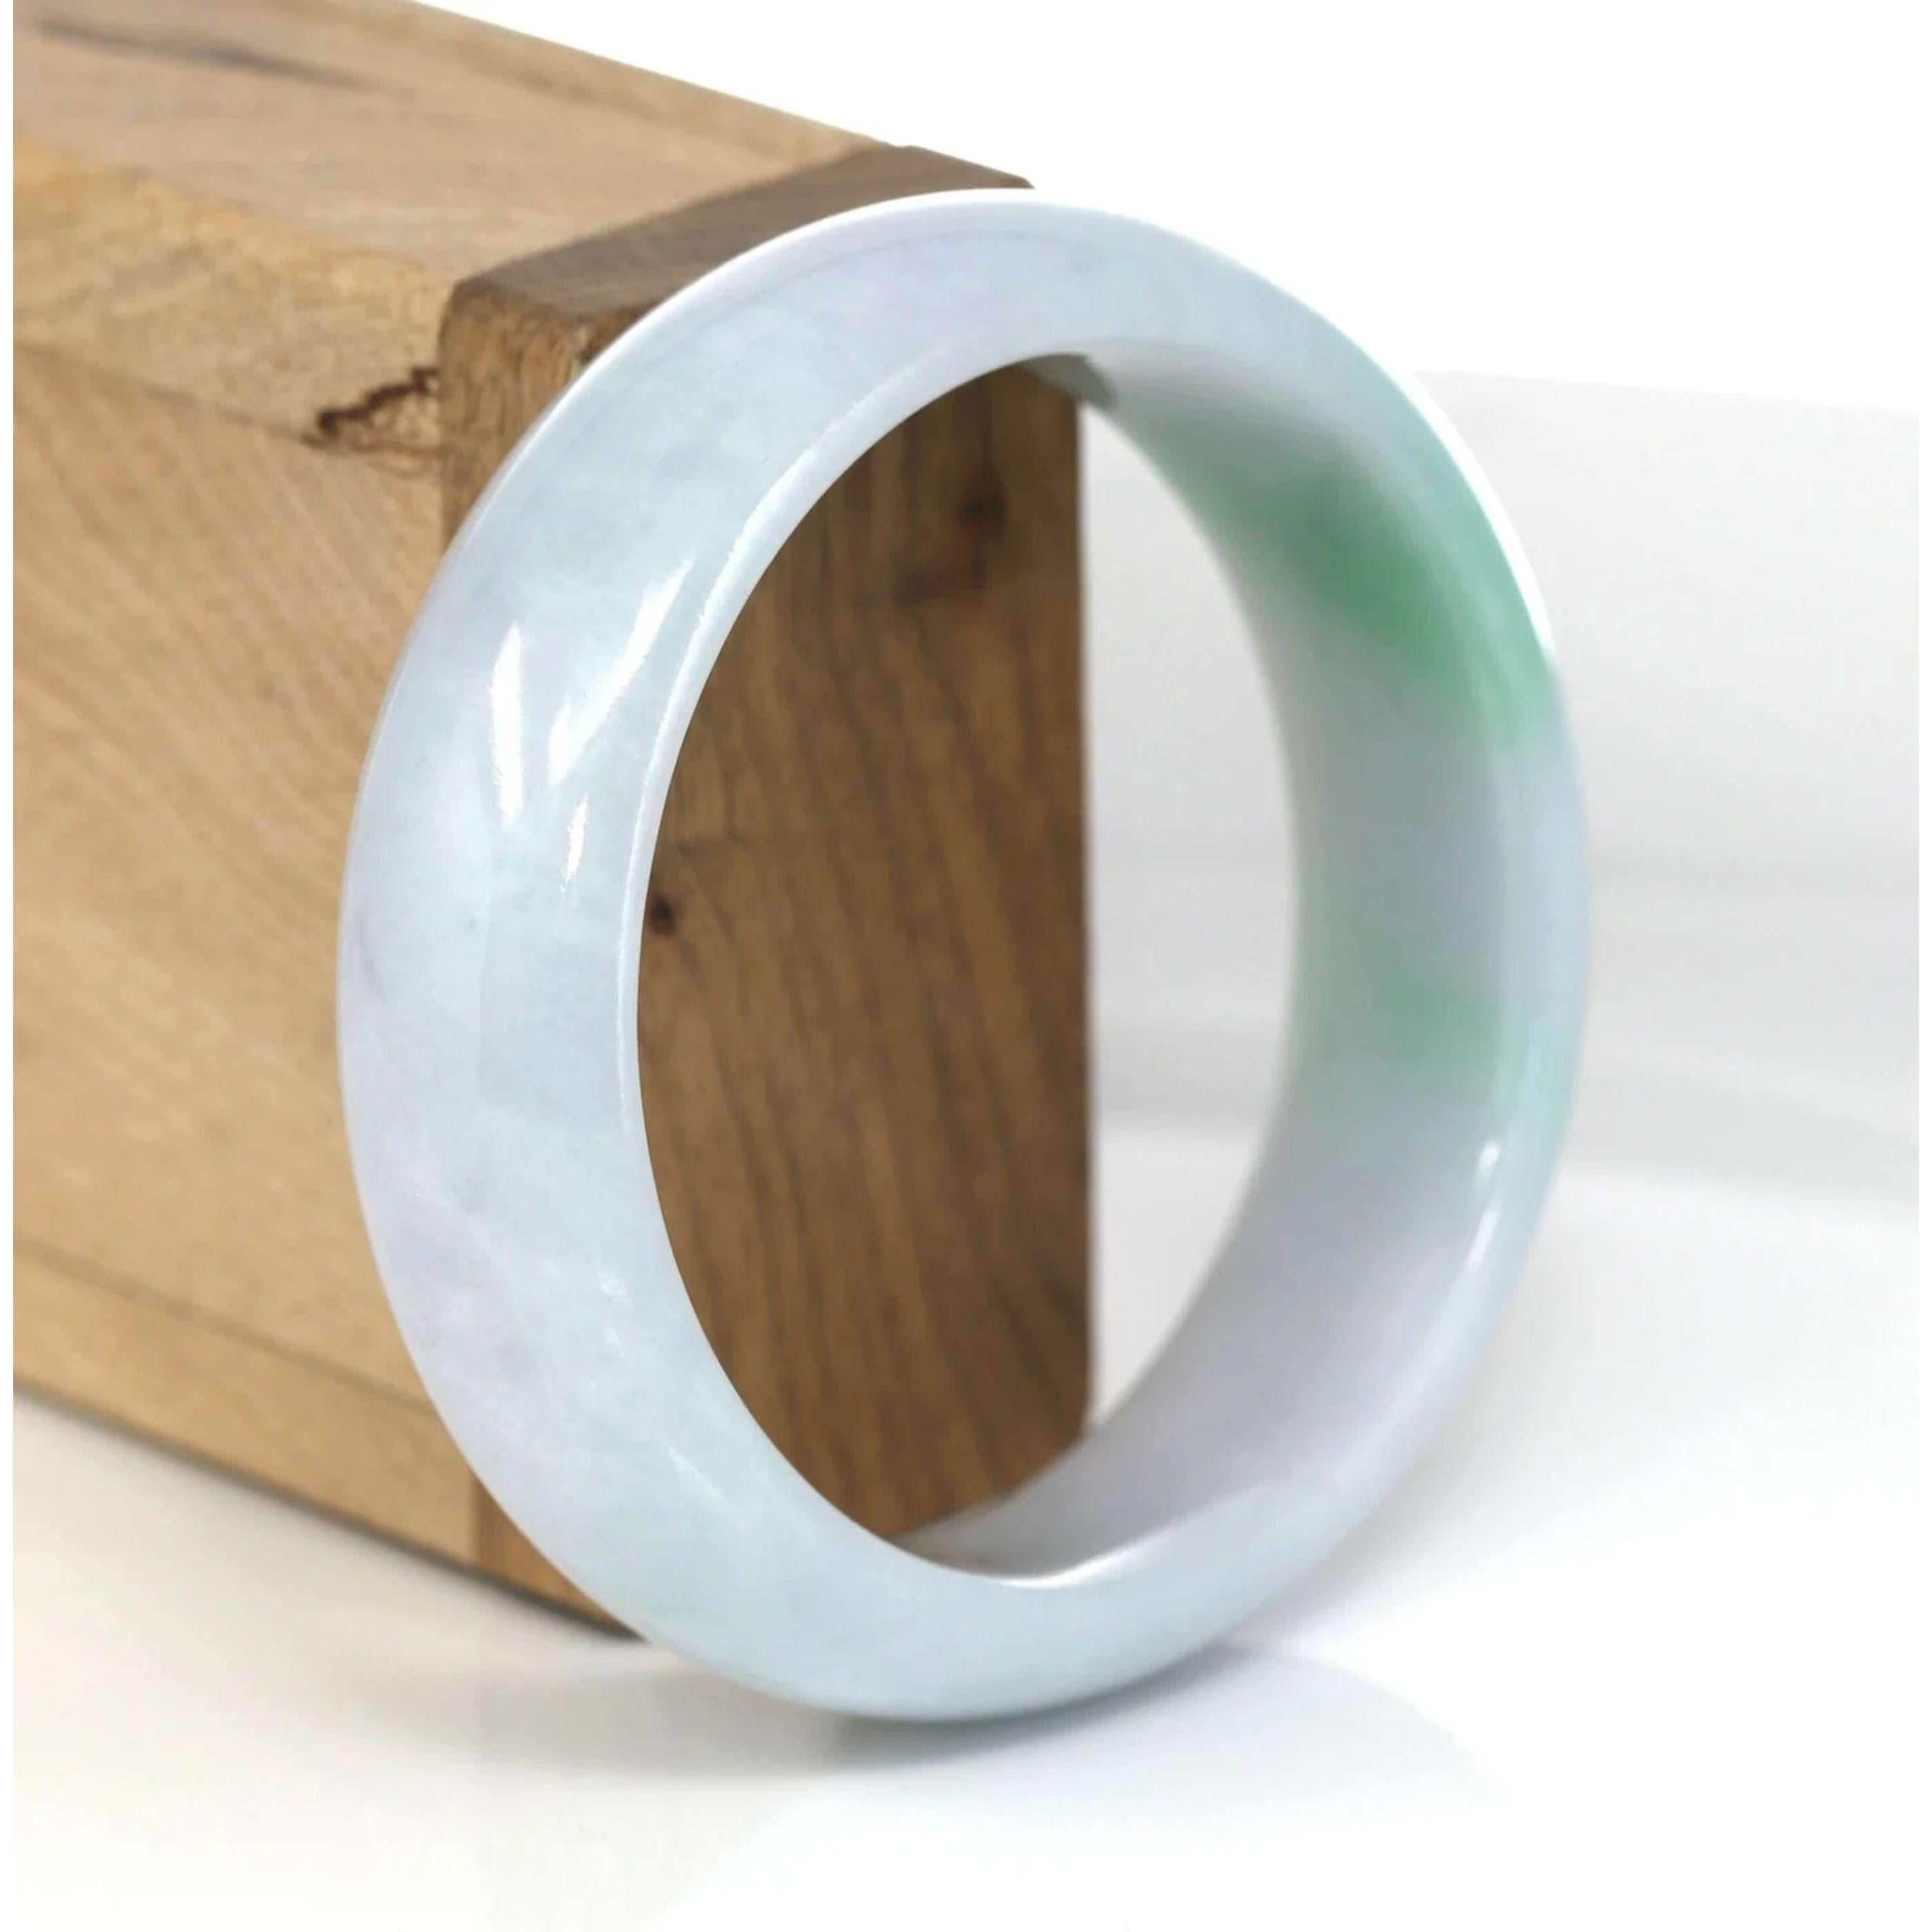 * DETAILS--- Véritable bracelet en jade de Birmanie. Ce bracelet est fabriqué en jade véritable de Birmanie. La texture du jade est très bonne et lisse avec une couleur vert-lavande. C'est un bracelet de luxe et parfait. Le bracelet classique